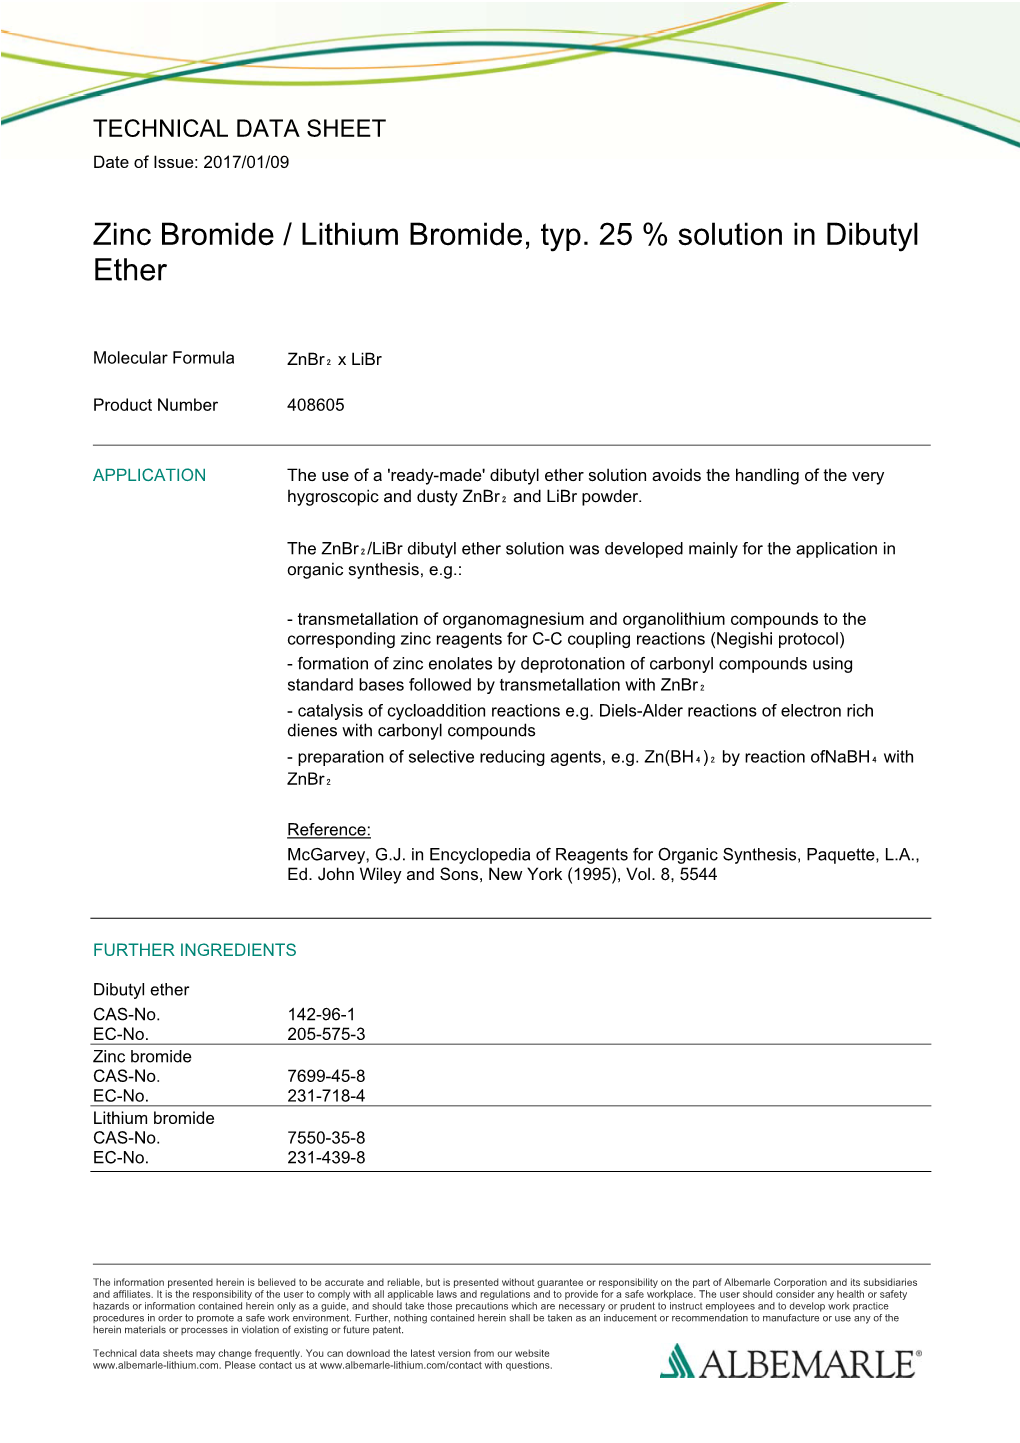 Zinc Bromide / Lithium Bromide, Typ. 25 % Solution in Dibutyl Ether